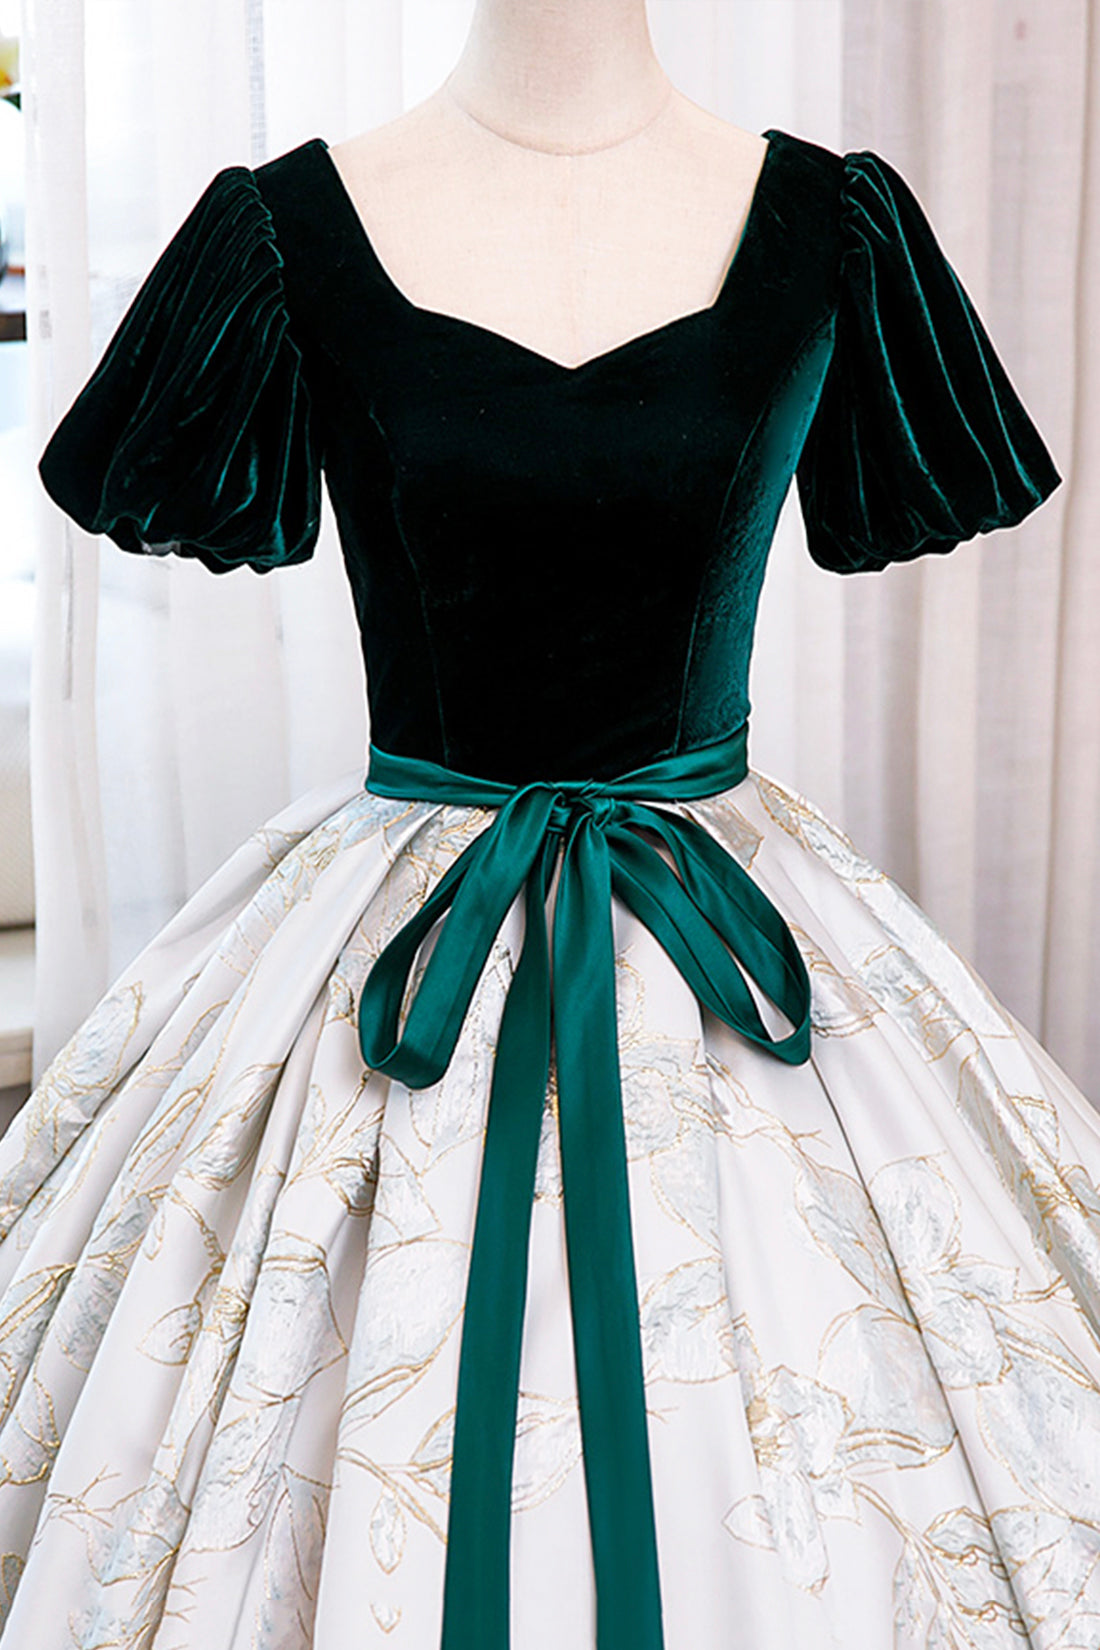 Green Velvet Floor-Length Printing Prom Dresses, A-Line Short Sleeve Evening Formal Dresses